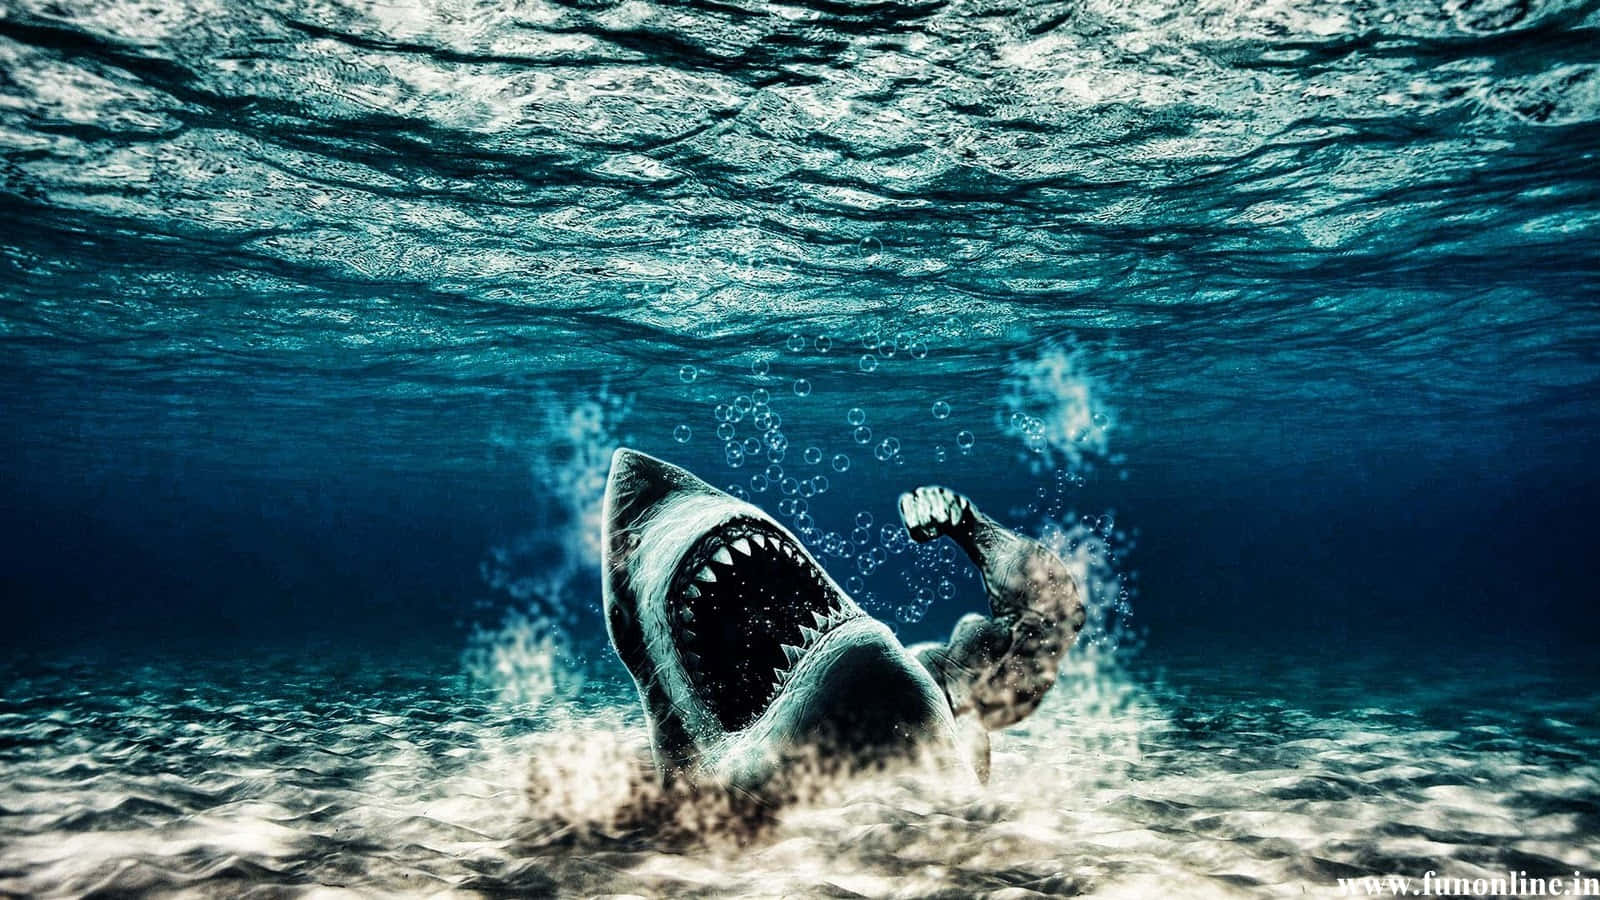 En truende, stor hvid haj svømmer truende gennem dybderne af det blå ocean. Wallpaper